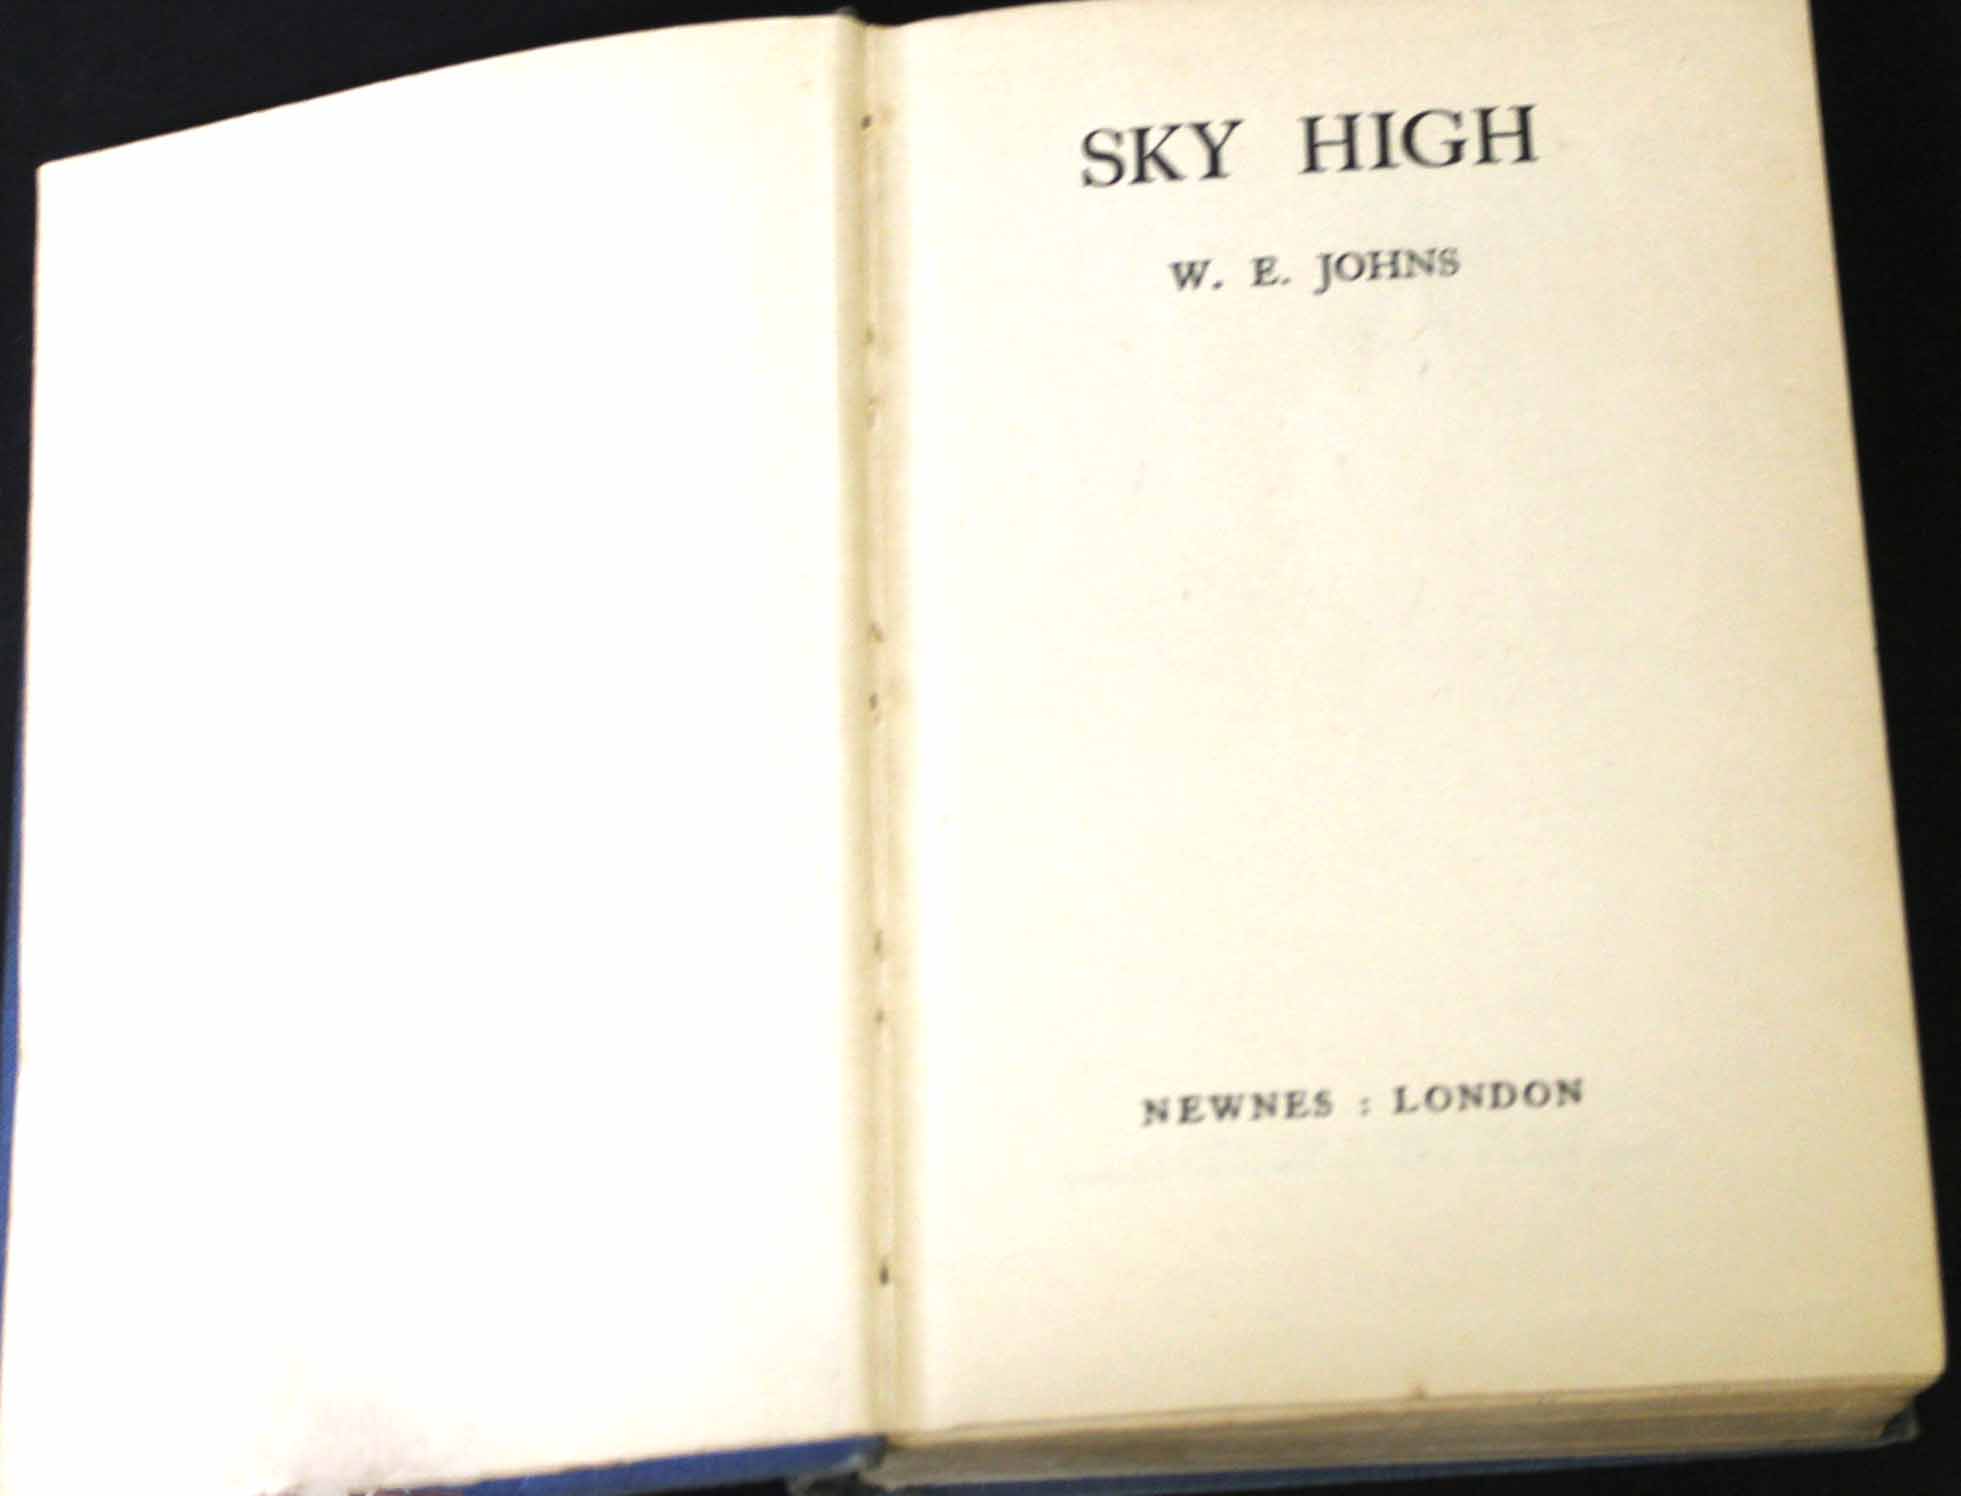 W E JOHNS: SKY HIGH, London, Newnes [1936], 1st edition, original cloth